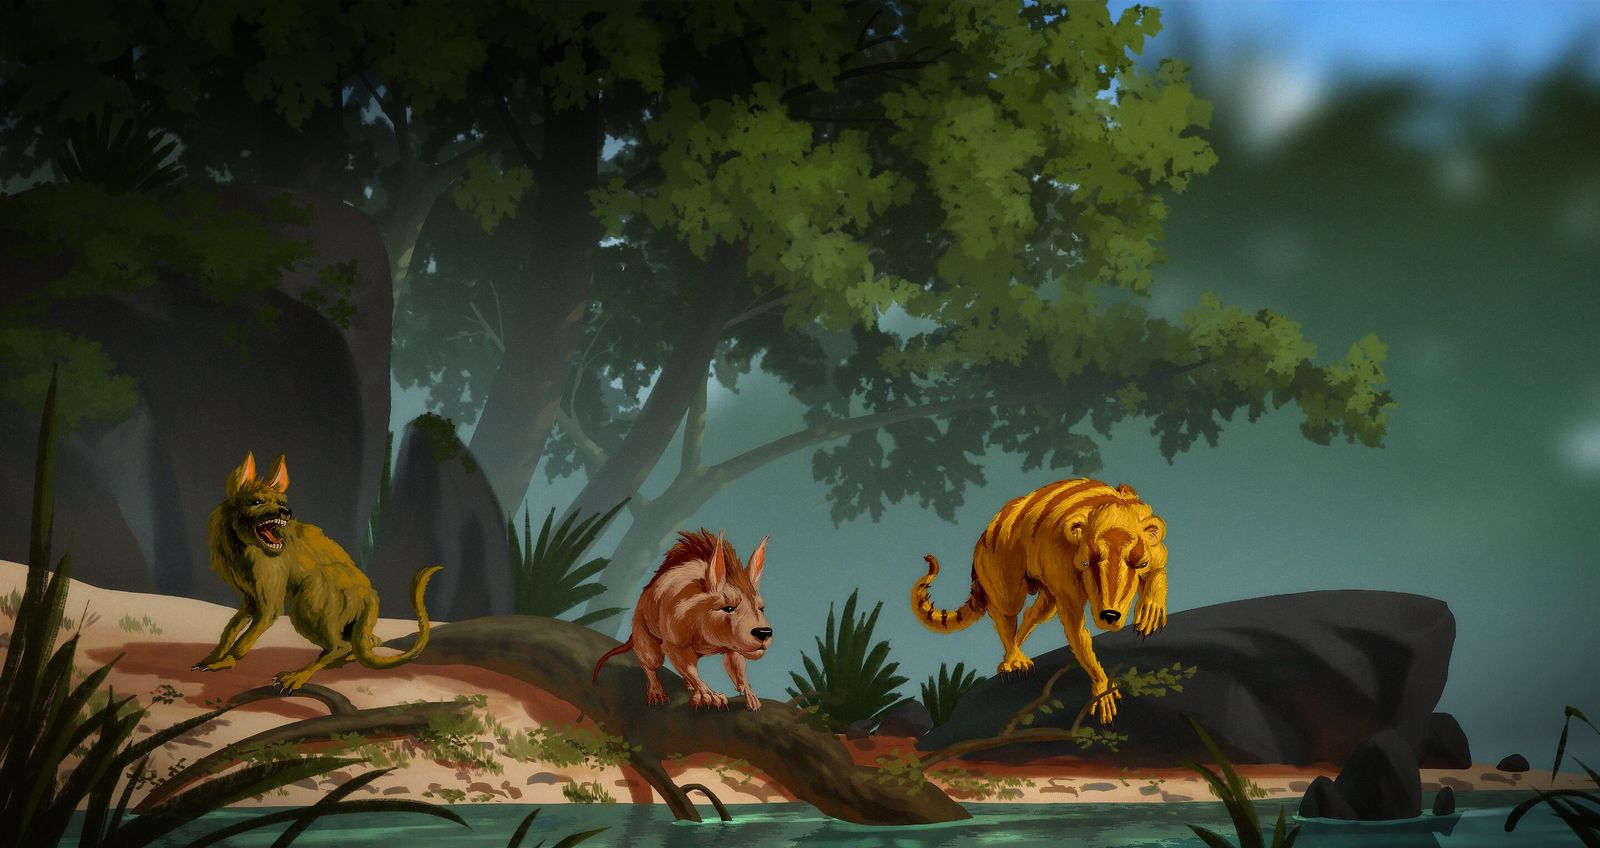 صورة تخيلية لمخلوقات من الثدييات عاشت بعد انقراض الديناصورات استناداً لحفريات تم اكتشافها  - Banana Art Studio